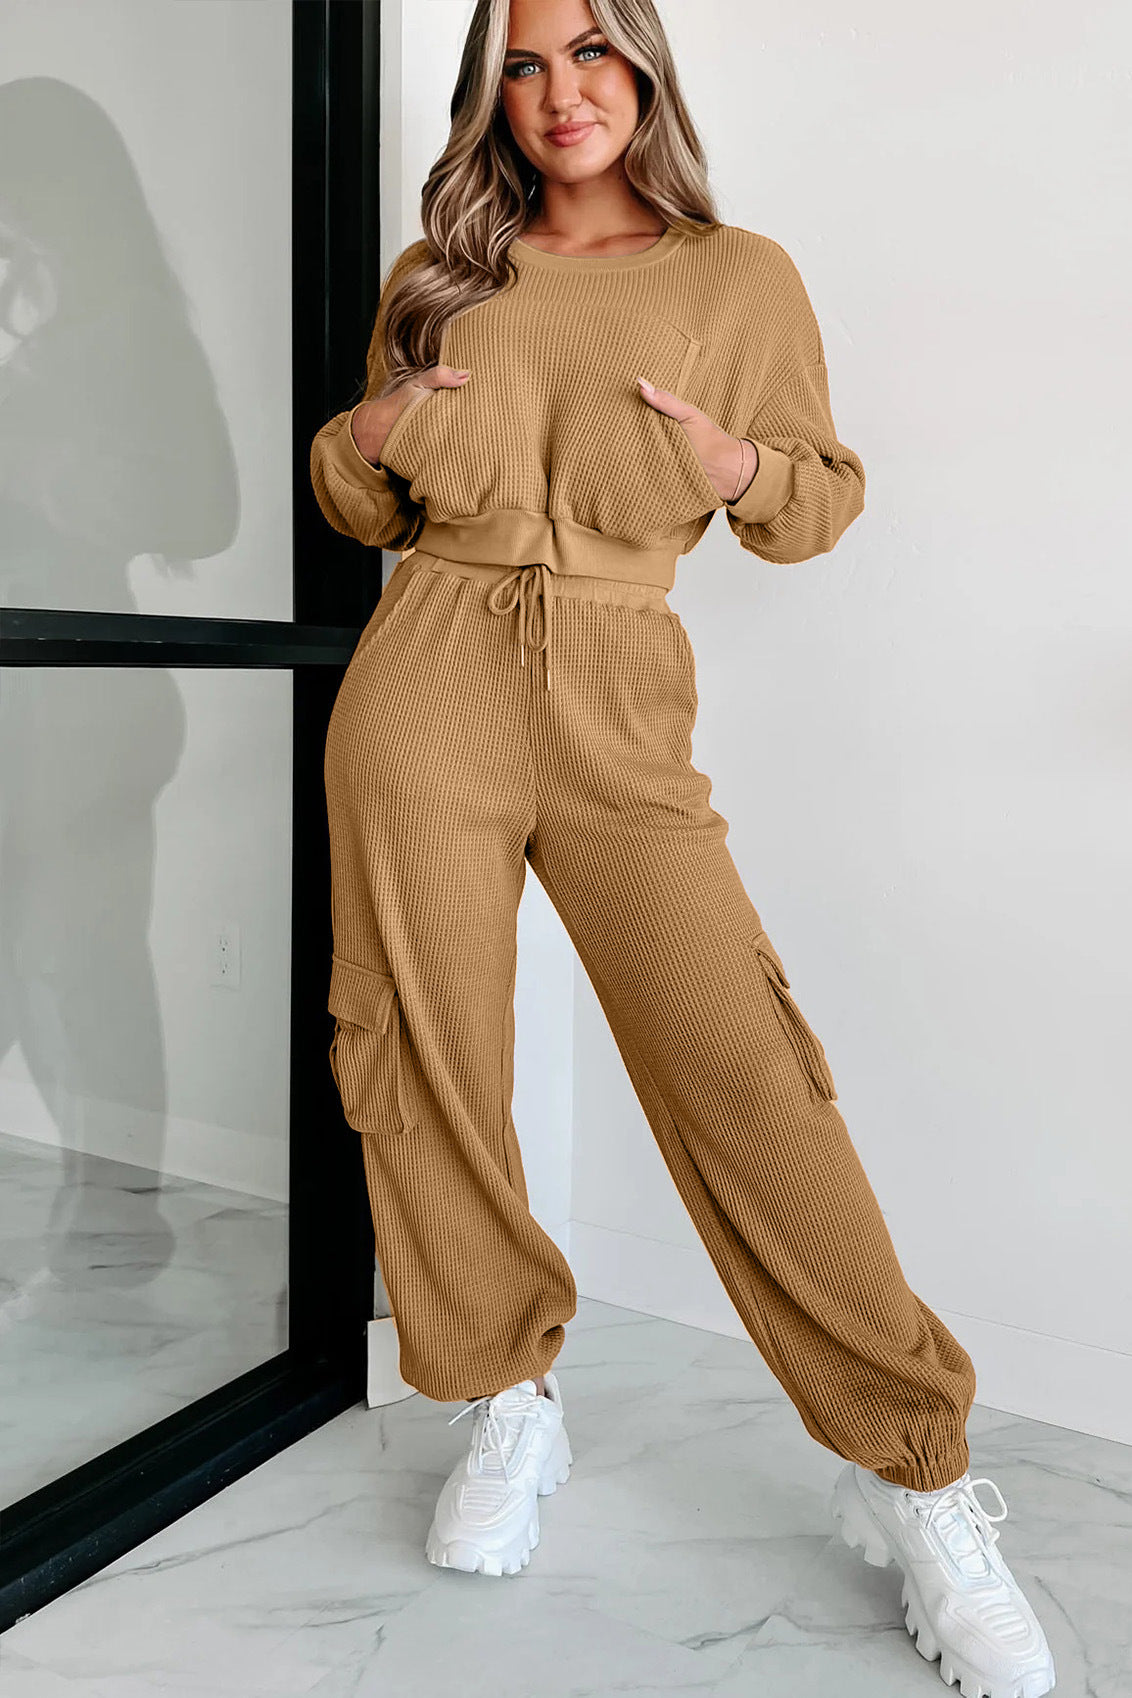 Women's Solid Color Short Casual Suit